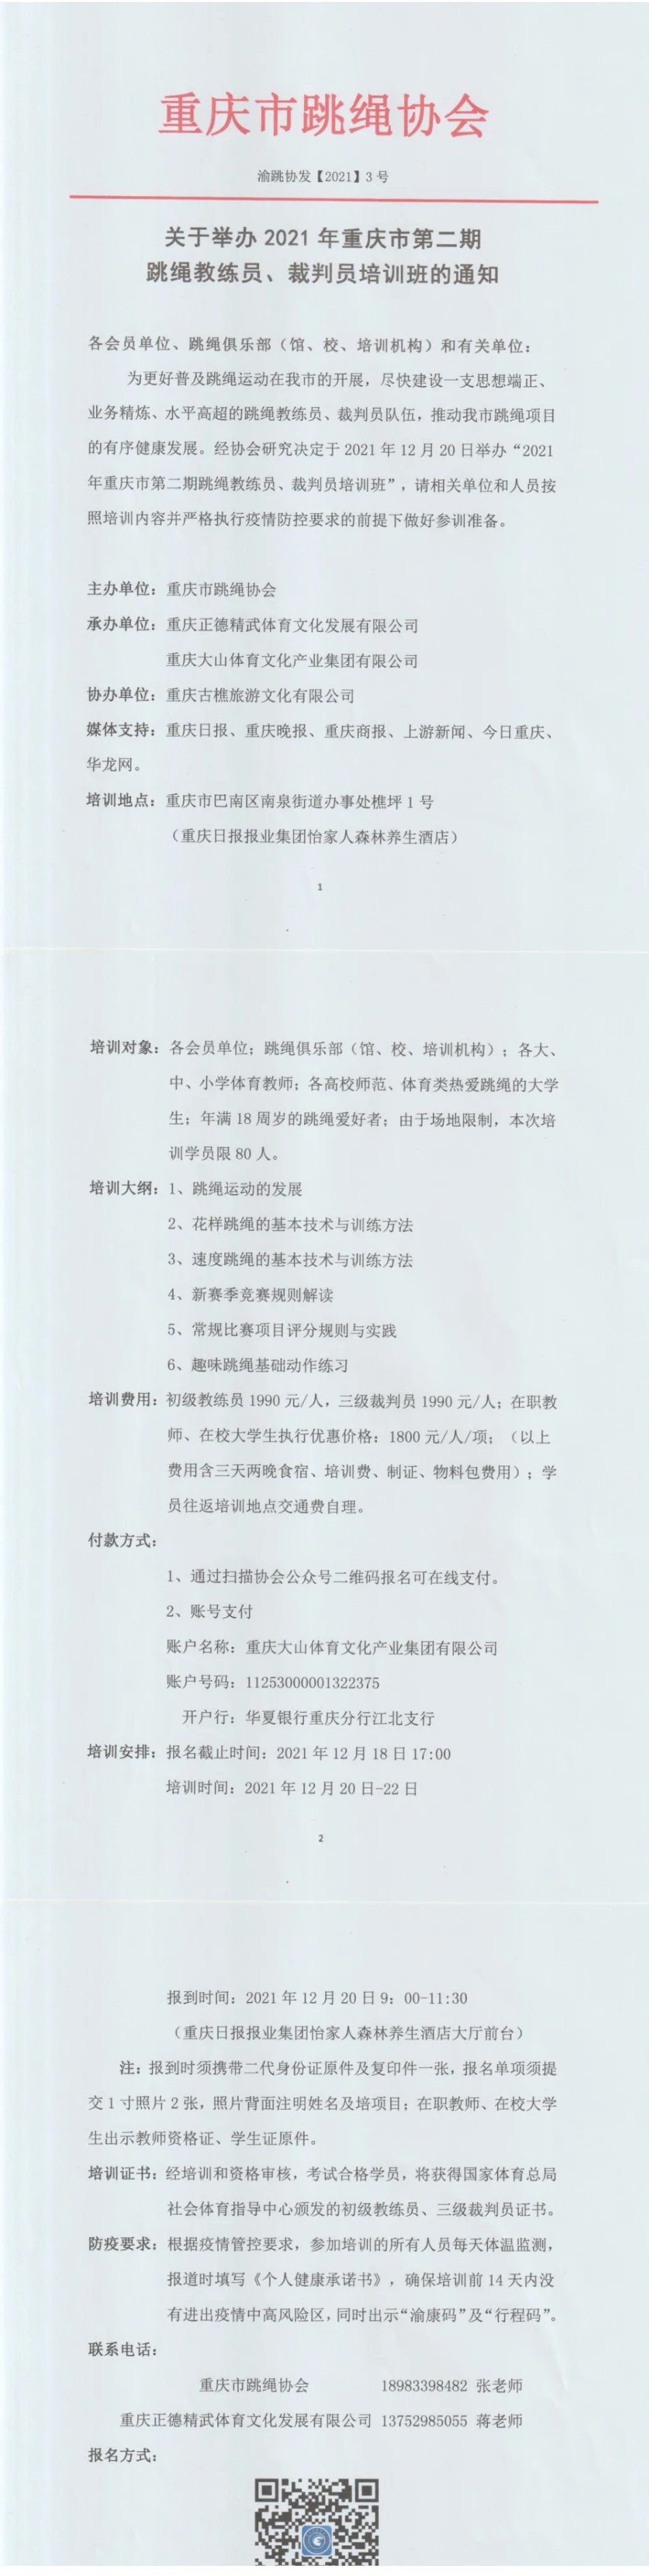  关于举办2021年重庆市第二期跳绳教练员、裁判员培训班的通知(图1)